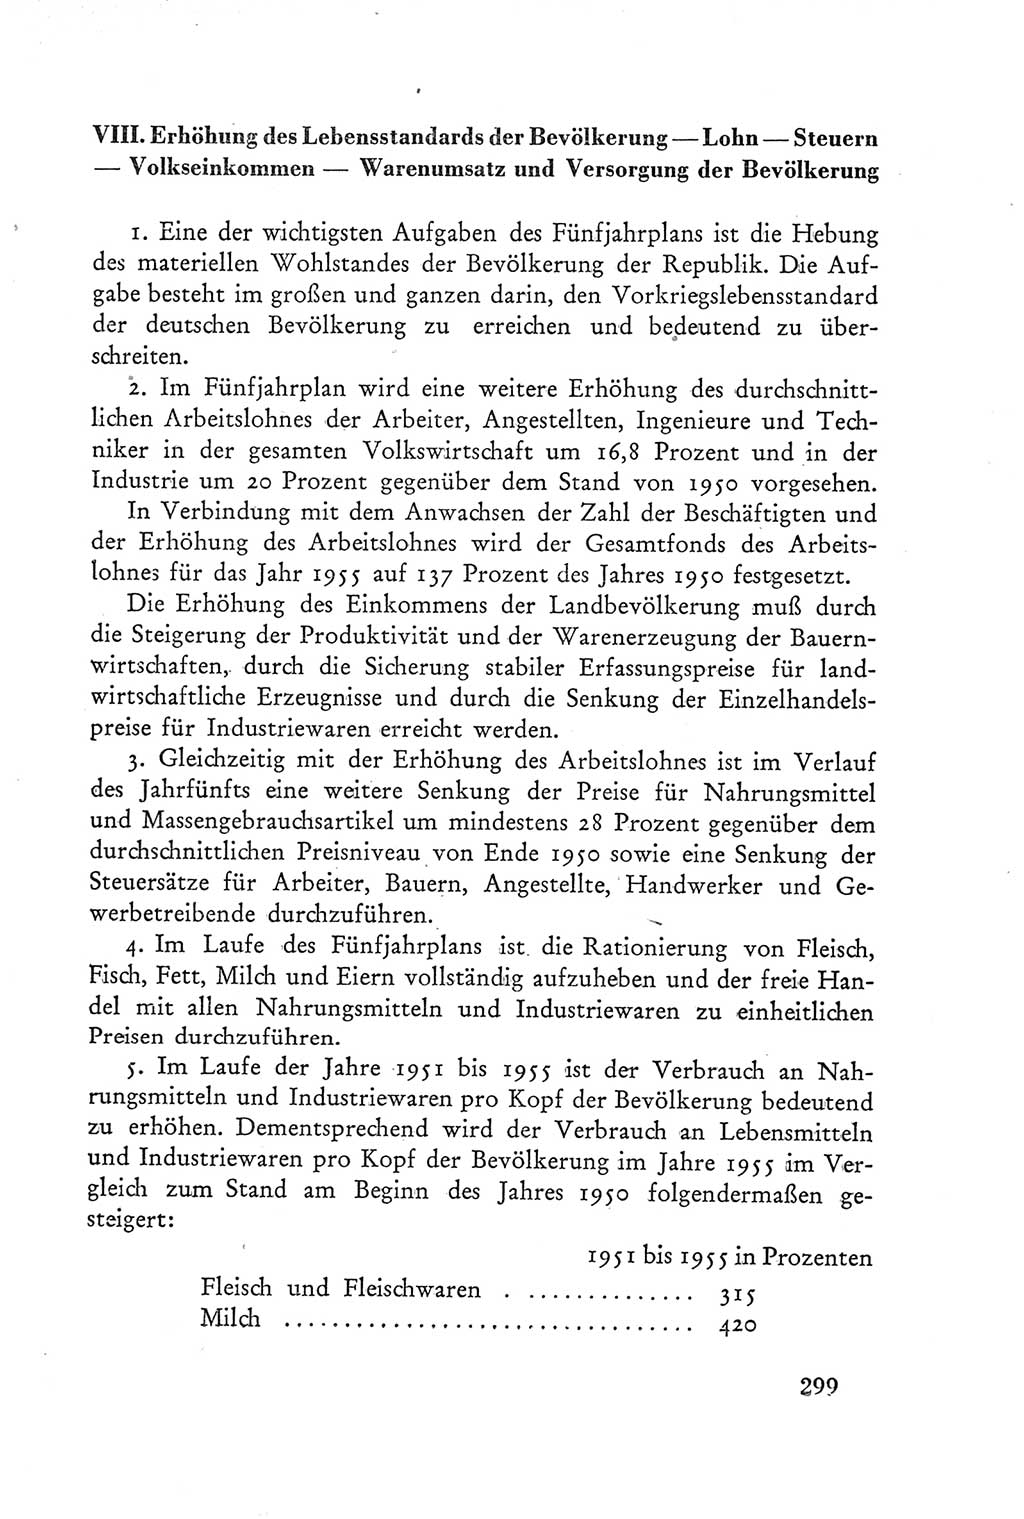 Protokoll der Verhandlungen des Ⅲ. Parteitages der Sozialistischen Einheitspartei Deutschlands (SED) [Deutsche Demokratische Republik (DDR)] 1950, Band 2, Seite 299 (Prot. Verh. Ⅲ. PT SED DDR 1950, Bd. 2, S. 299)